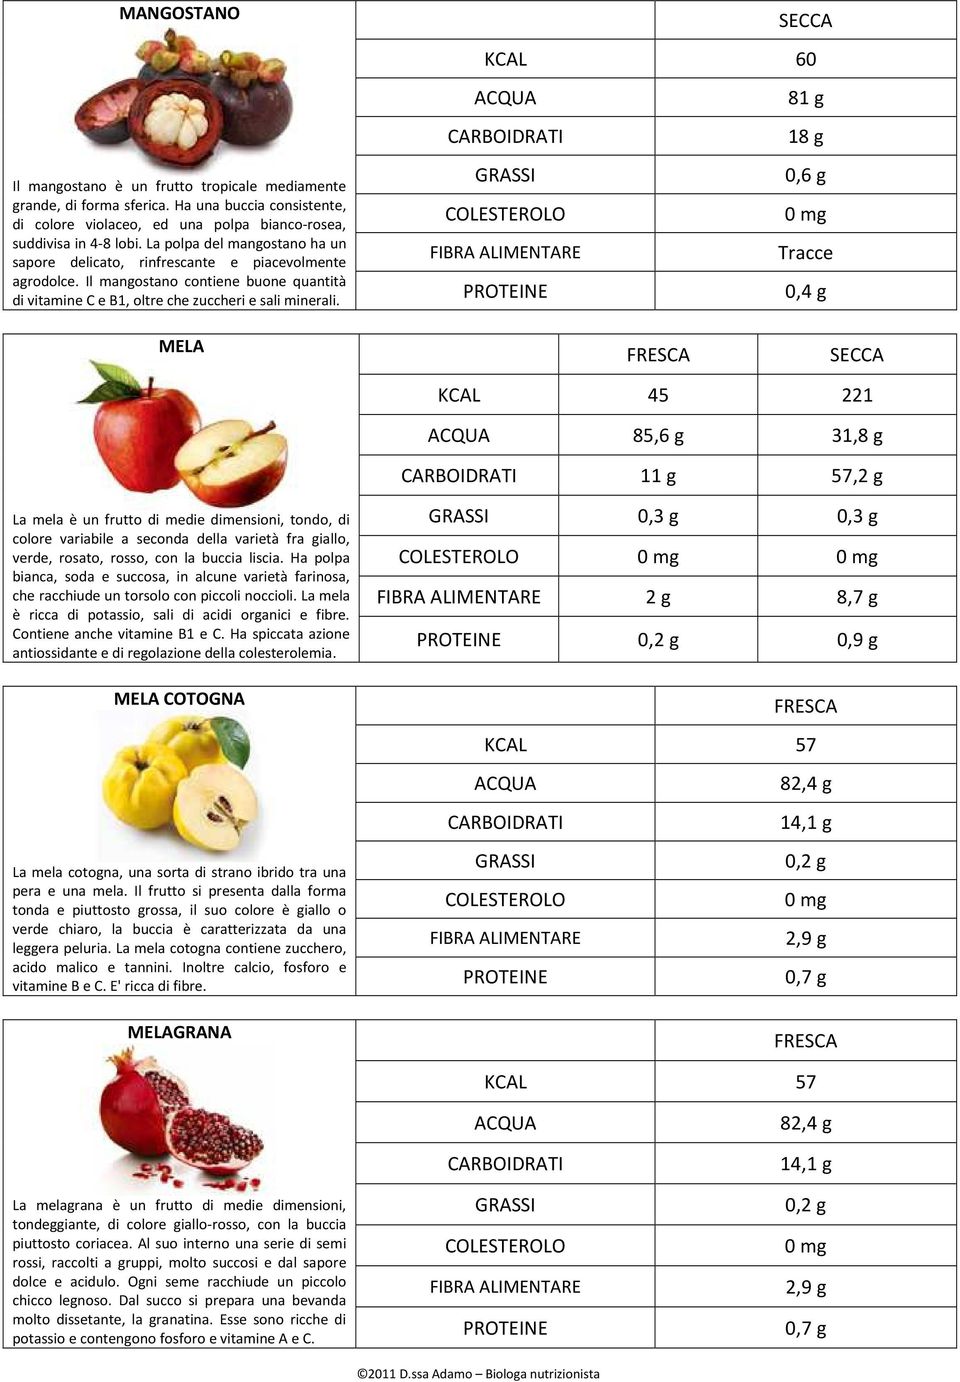 SECCA KCAL 60 81 g 18 g 0,6 g Tracce 0,4 g MELA SECCA KCAL 45 221 85,6 g 31,8 g 11 g 57,2 g La mela è un frutto di medie dimensioni, tondo, di colore variabile a seconda della varietà fra giallo,